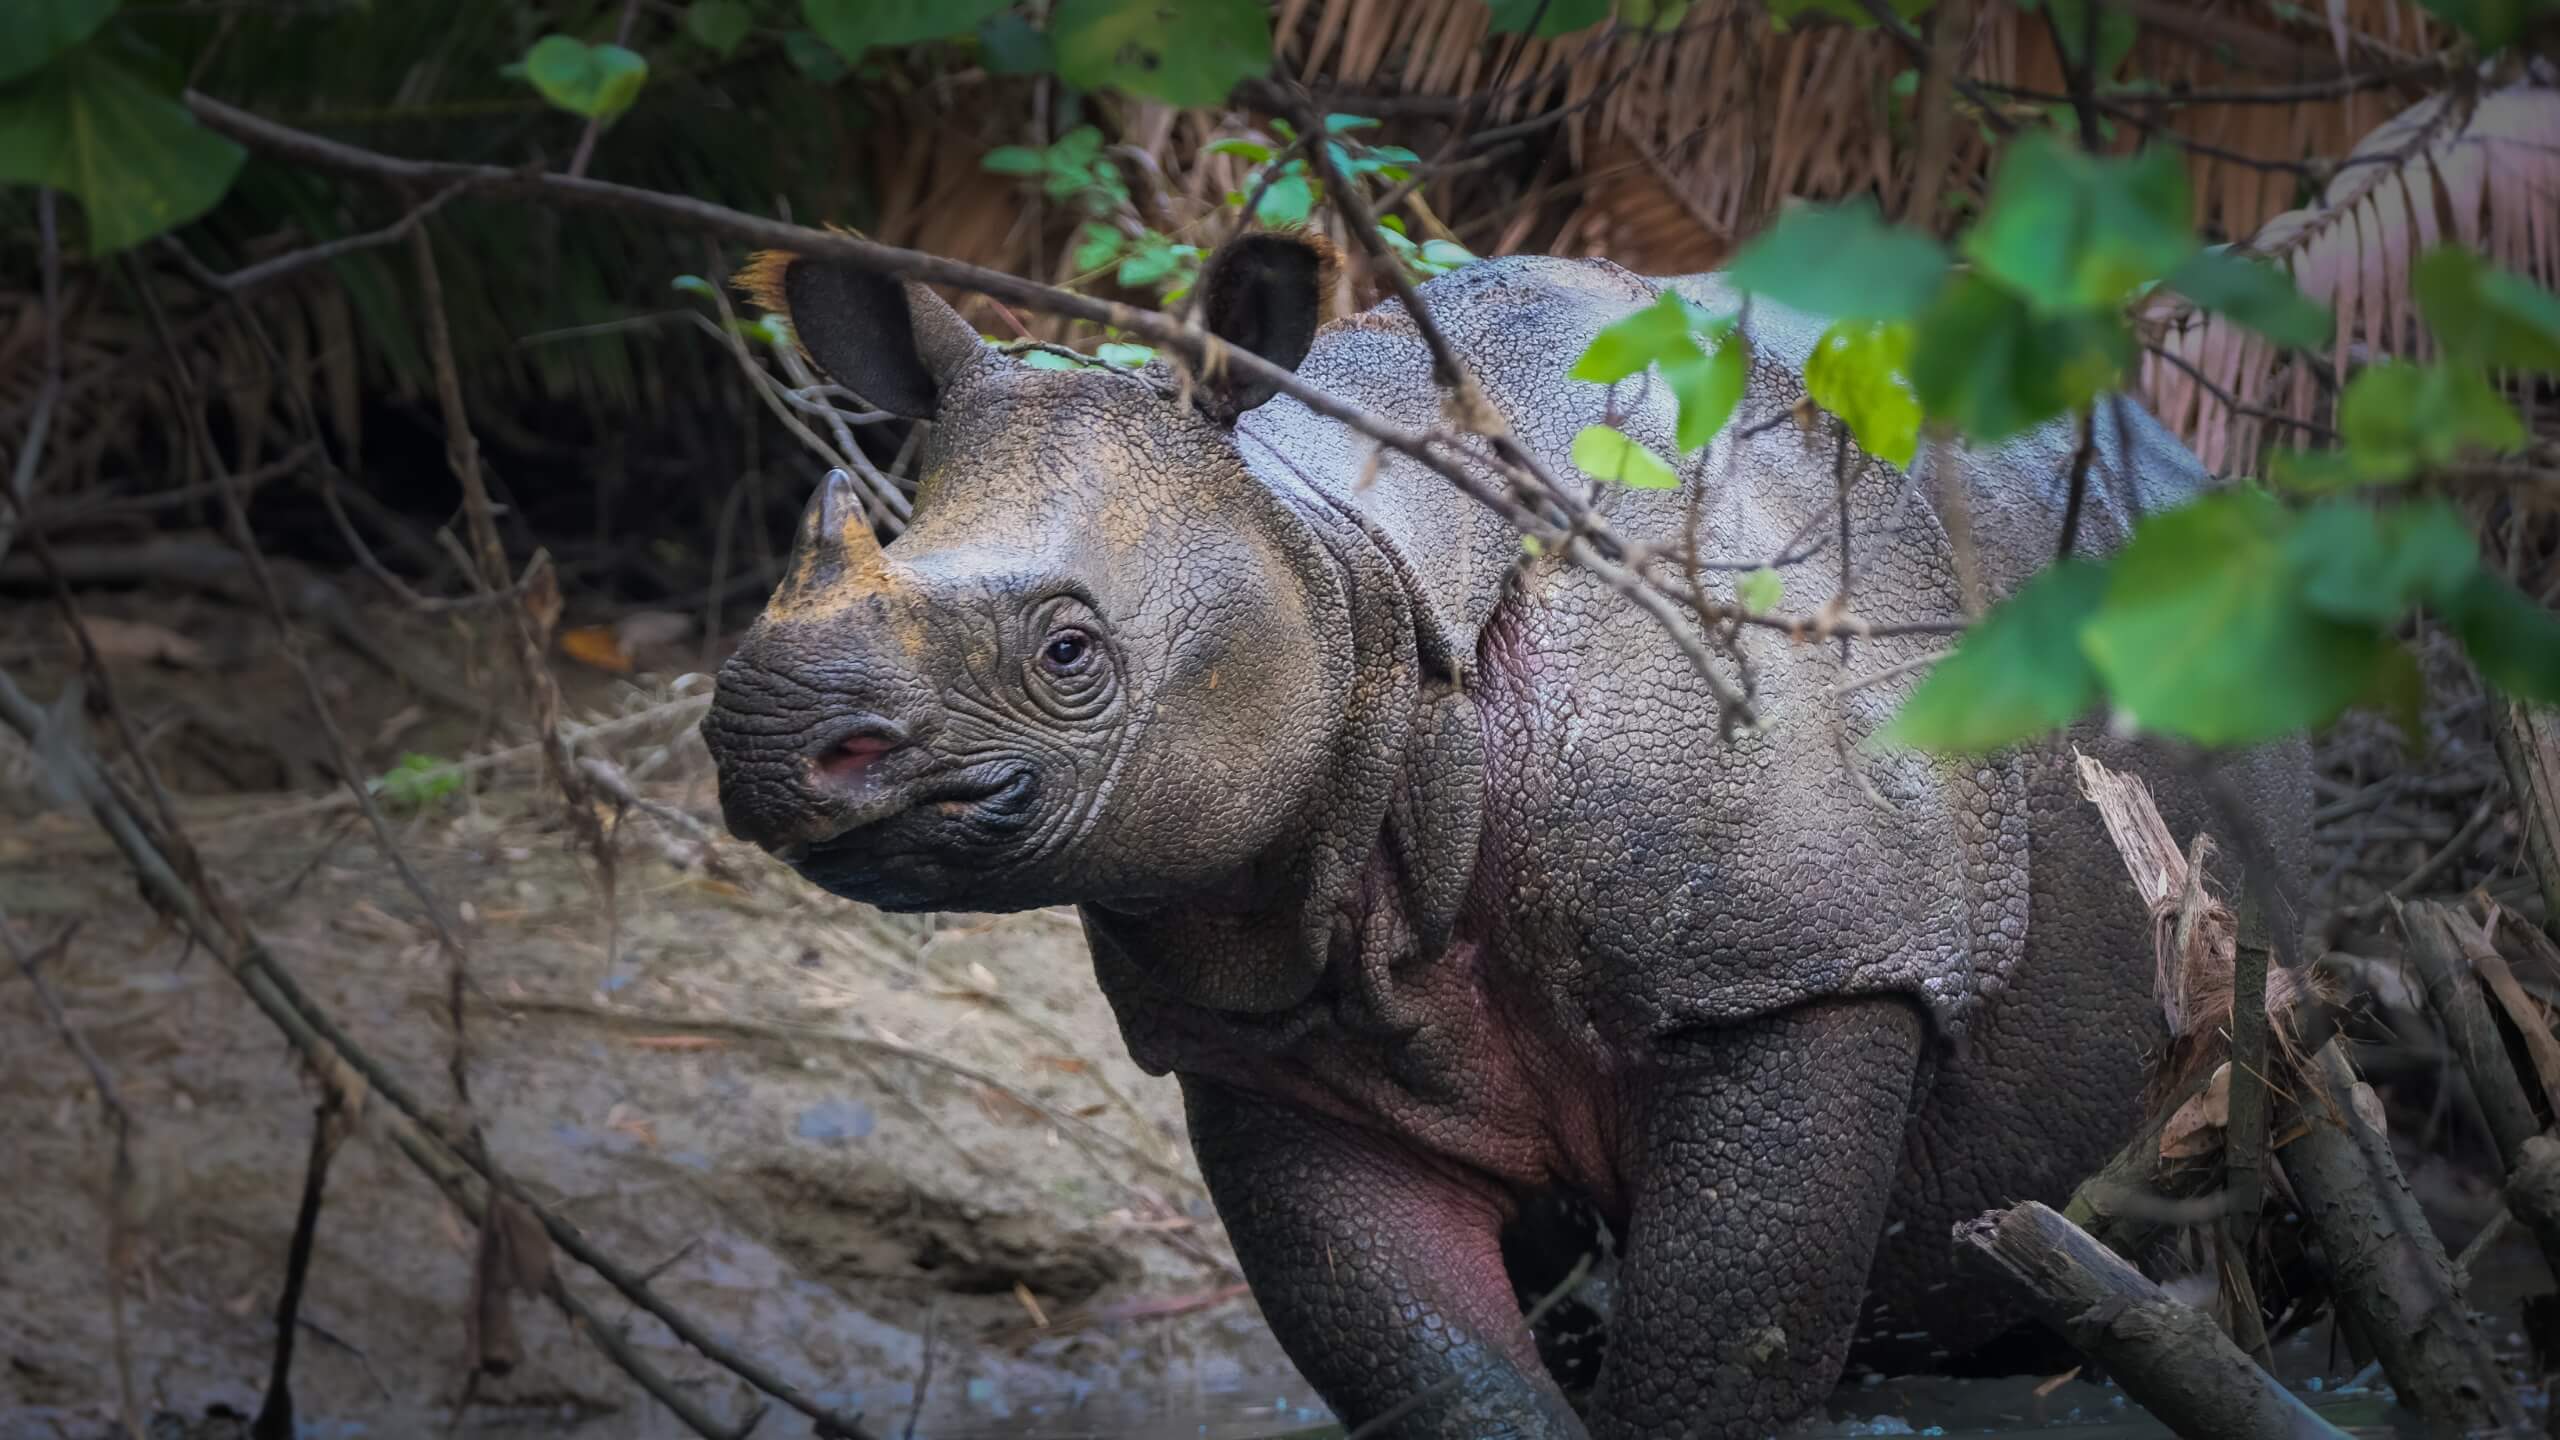 javan-rhinos-population featured image